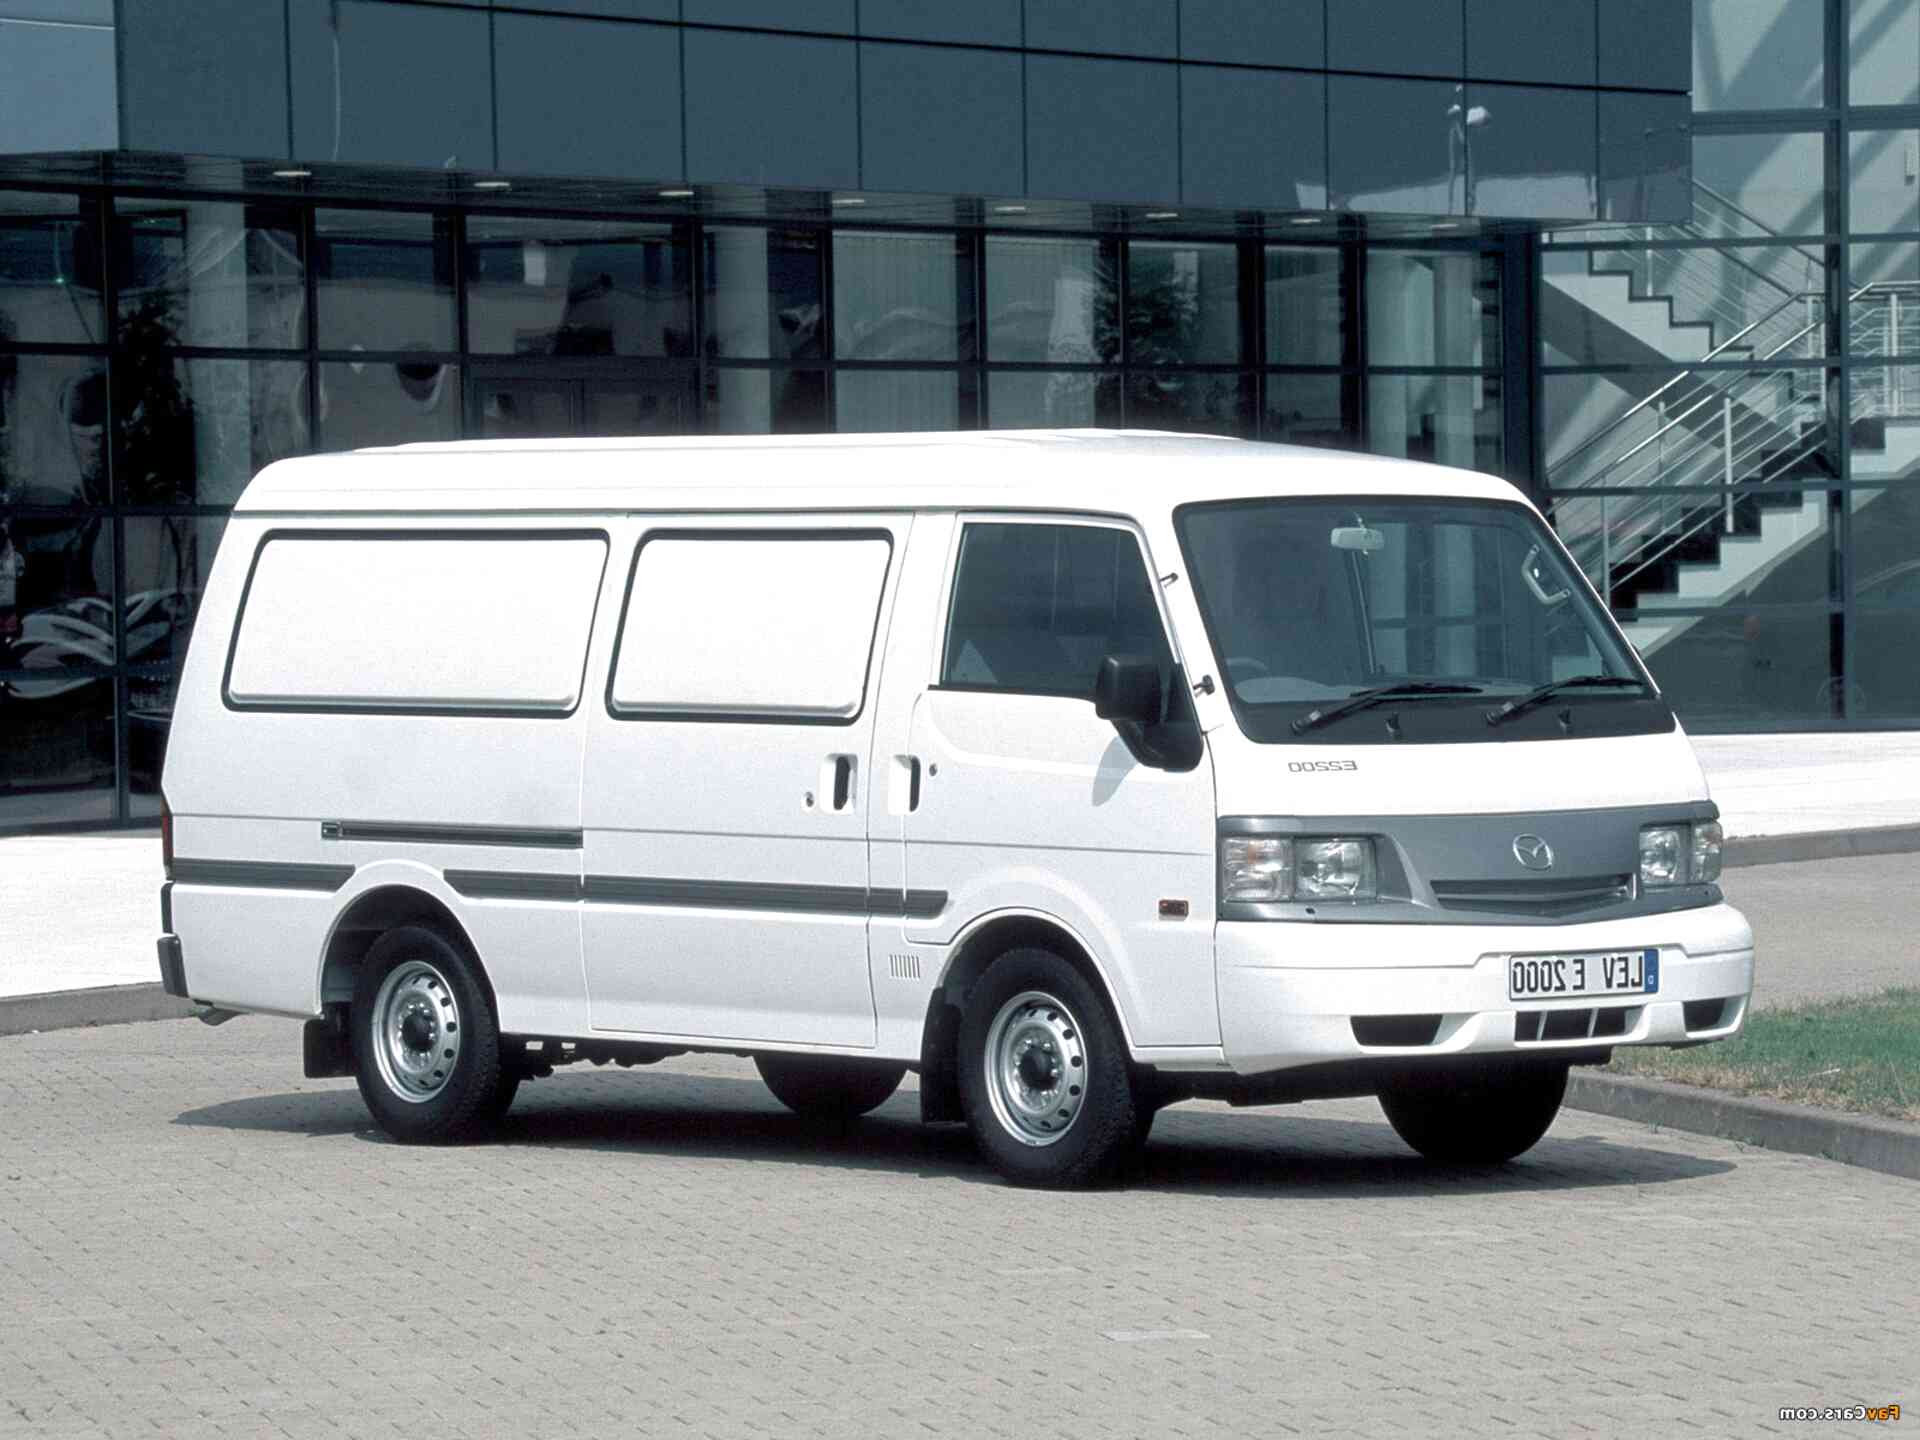 lwb vans for sale uk